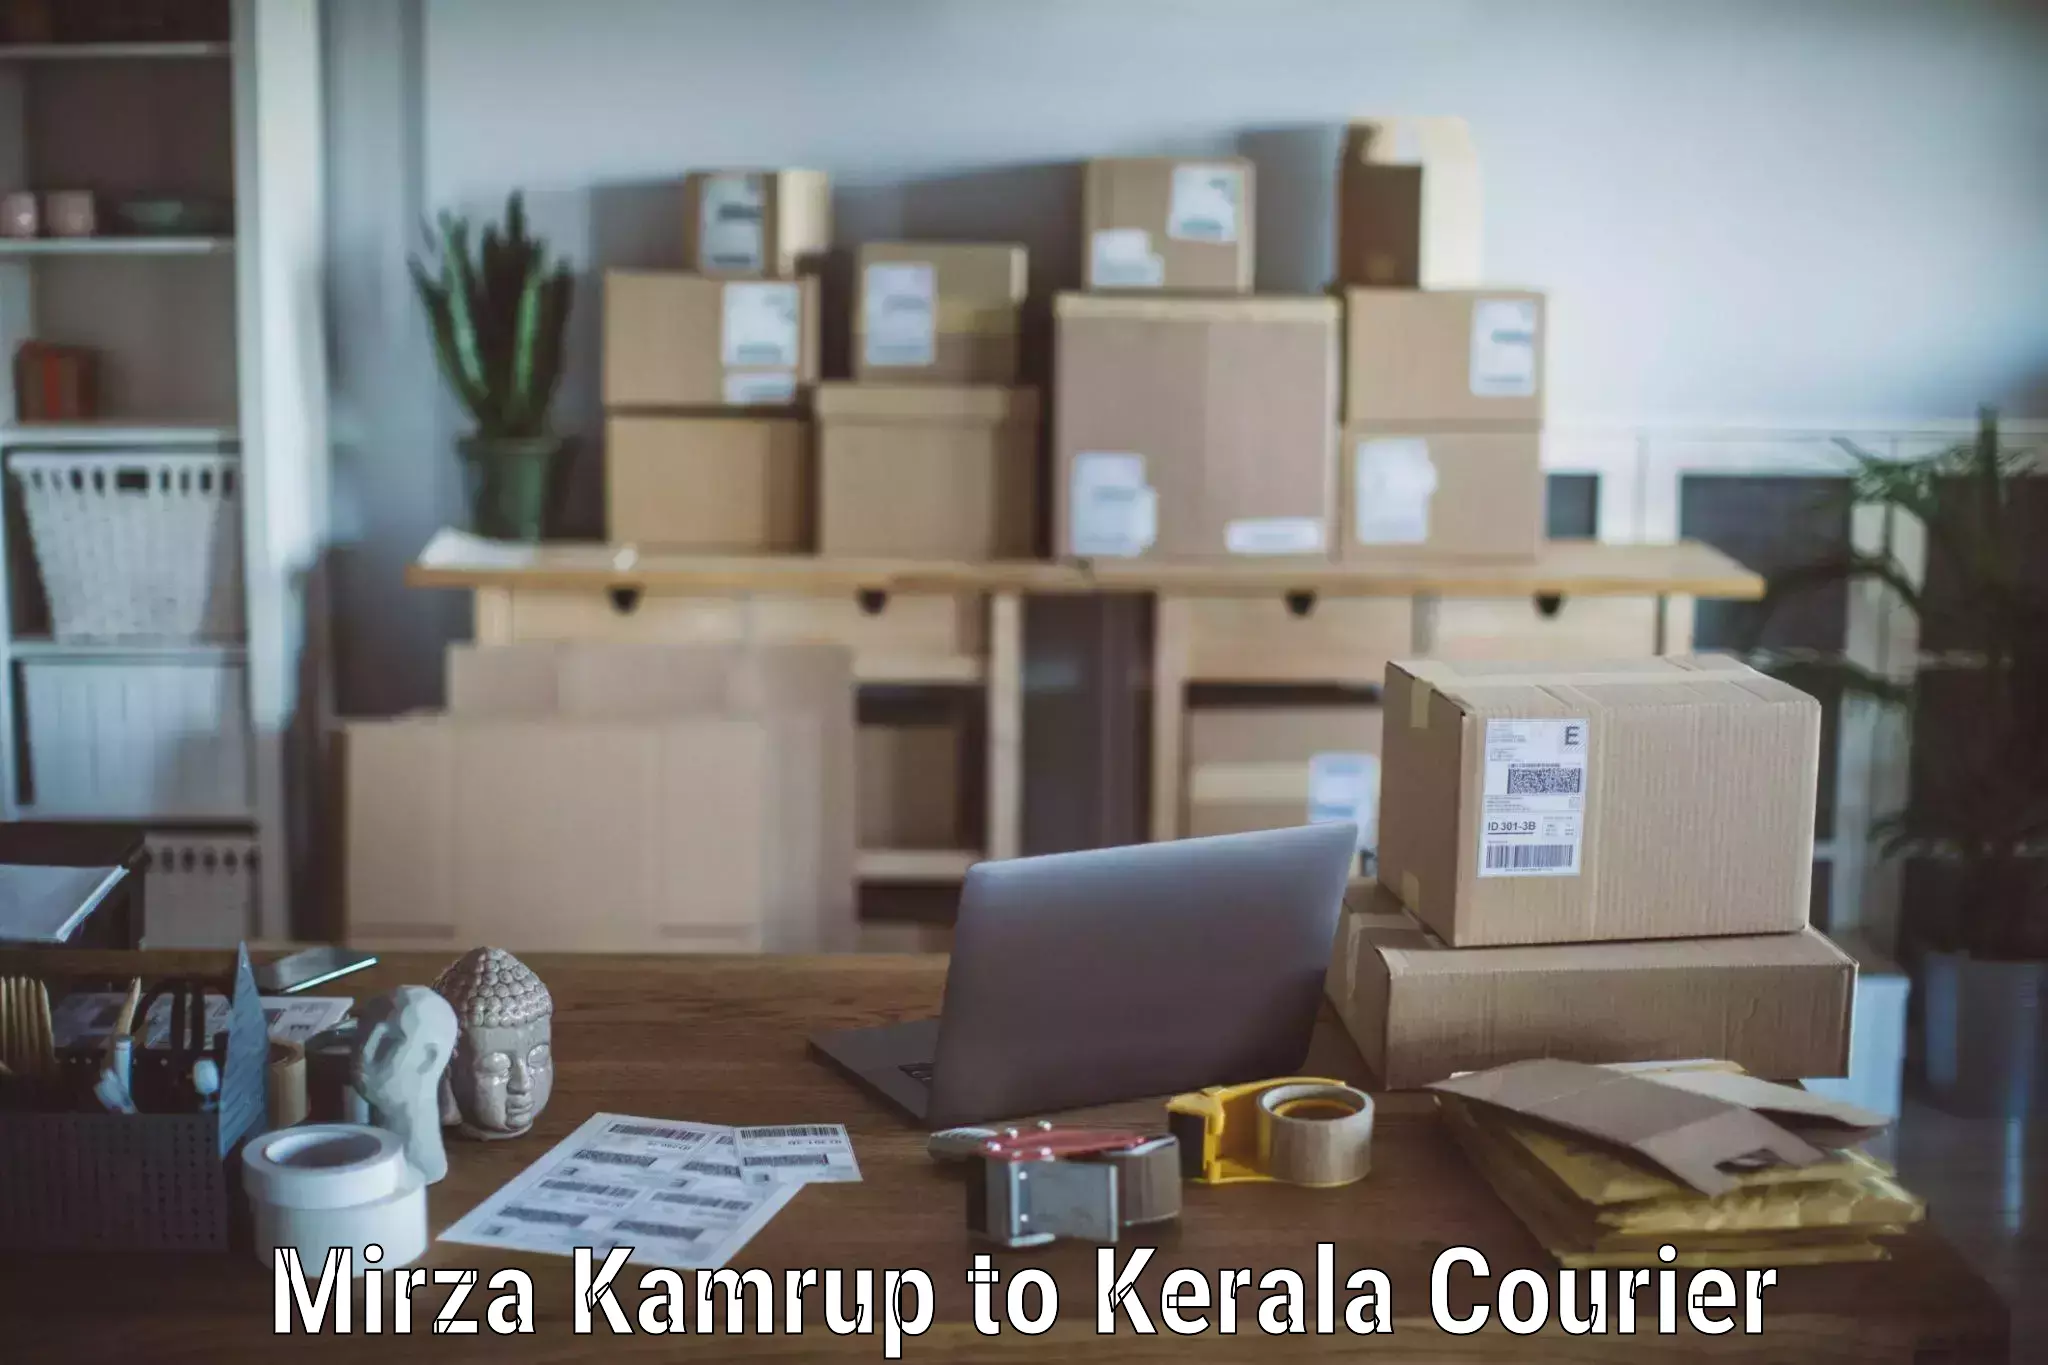 Professional moving company Mirza Kamrup to Pandikkad